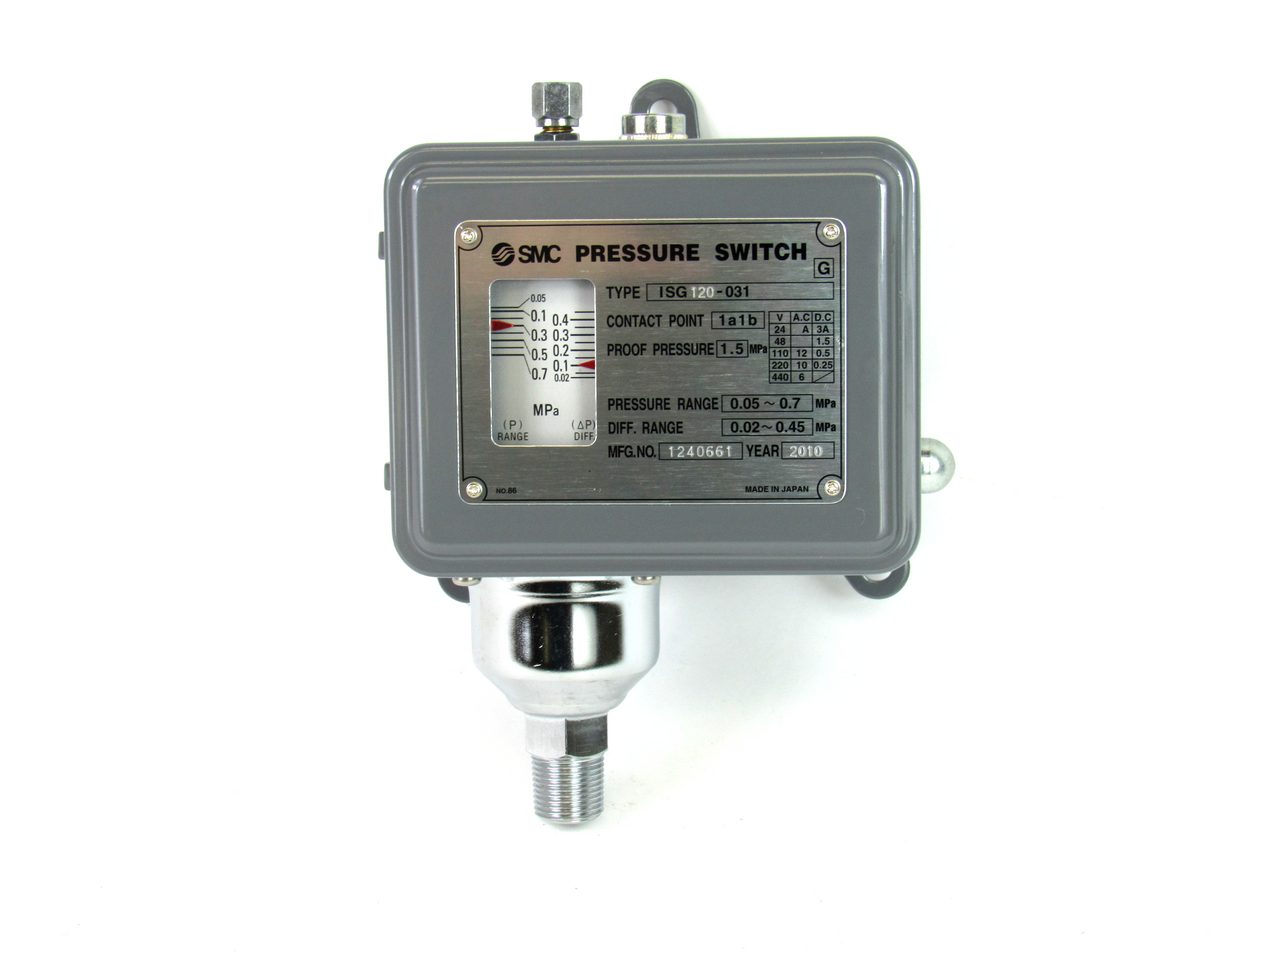 SMC ISG120-031 Pressure Switch, 1.5 MPa Proof Pressure